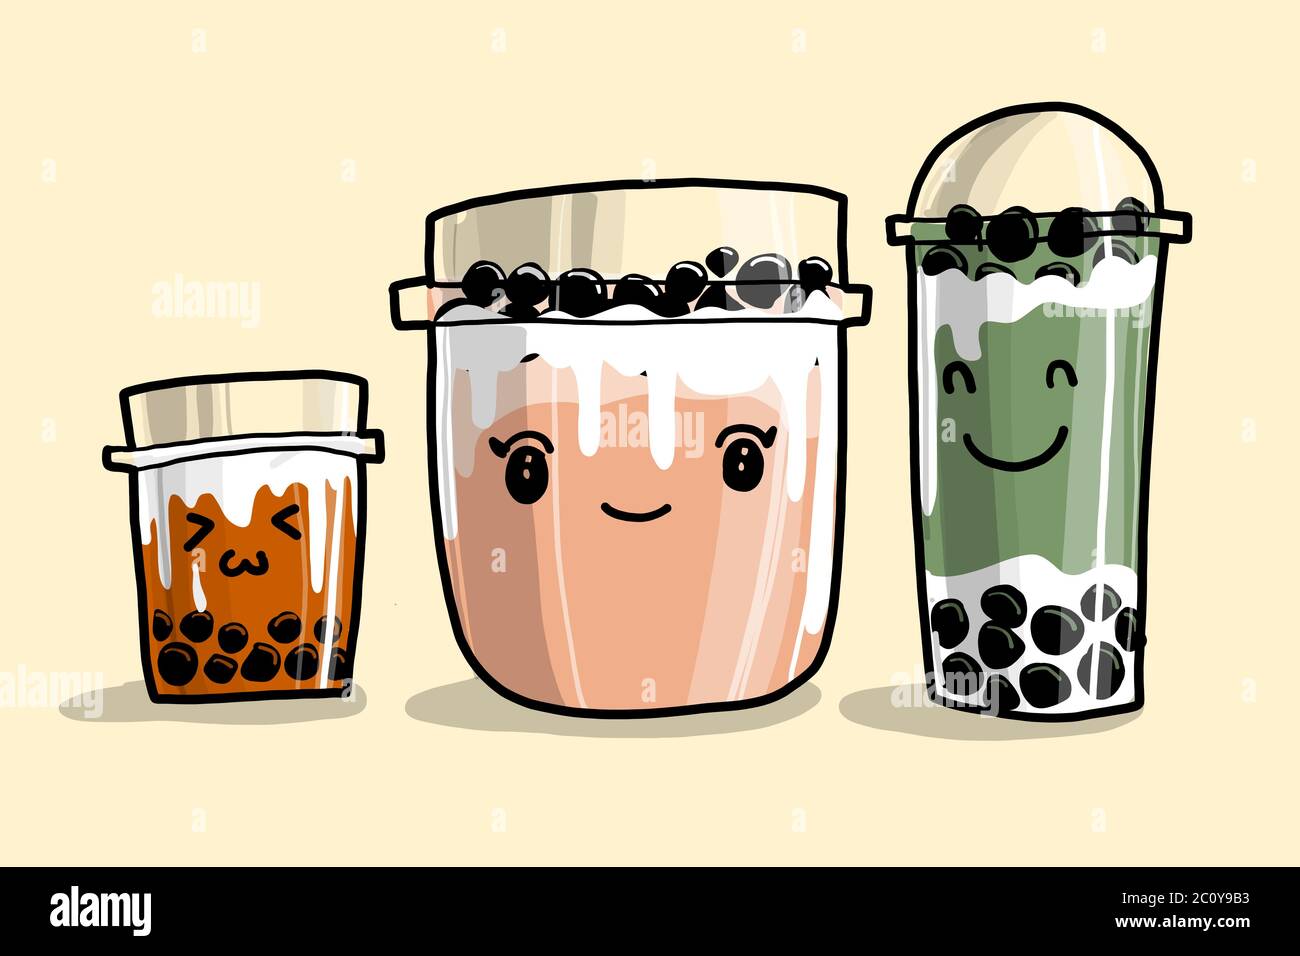 Drei Bubble Teetassen oder Perltee. Zeichnung Vektor-Illustration in kawaii Cartoon-Stil. Am besten für jede kommerzielle Grafik-Design. Es ist sehr berühmt in T Stock Vektor